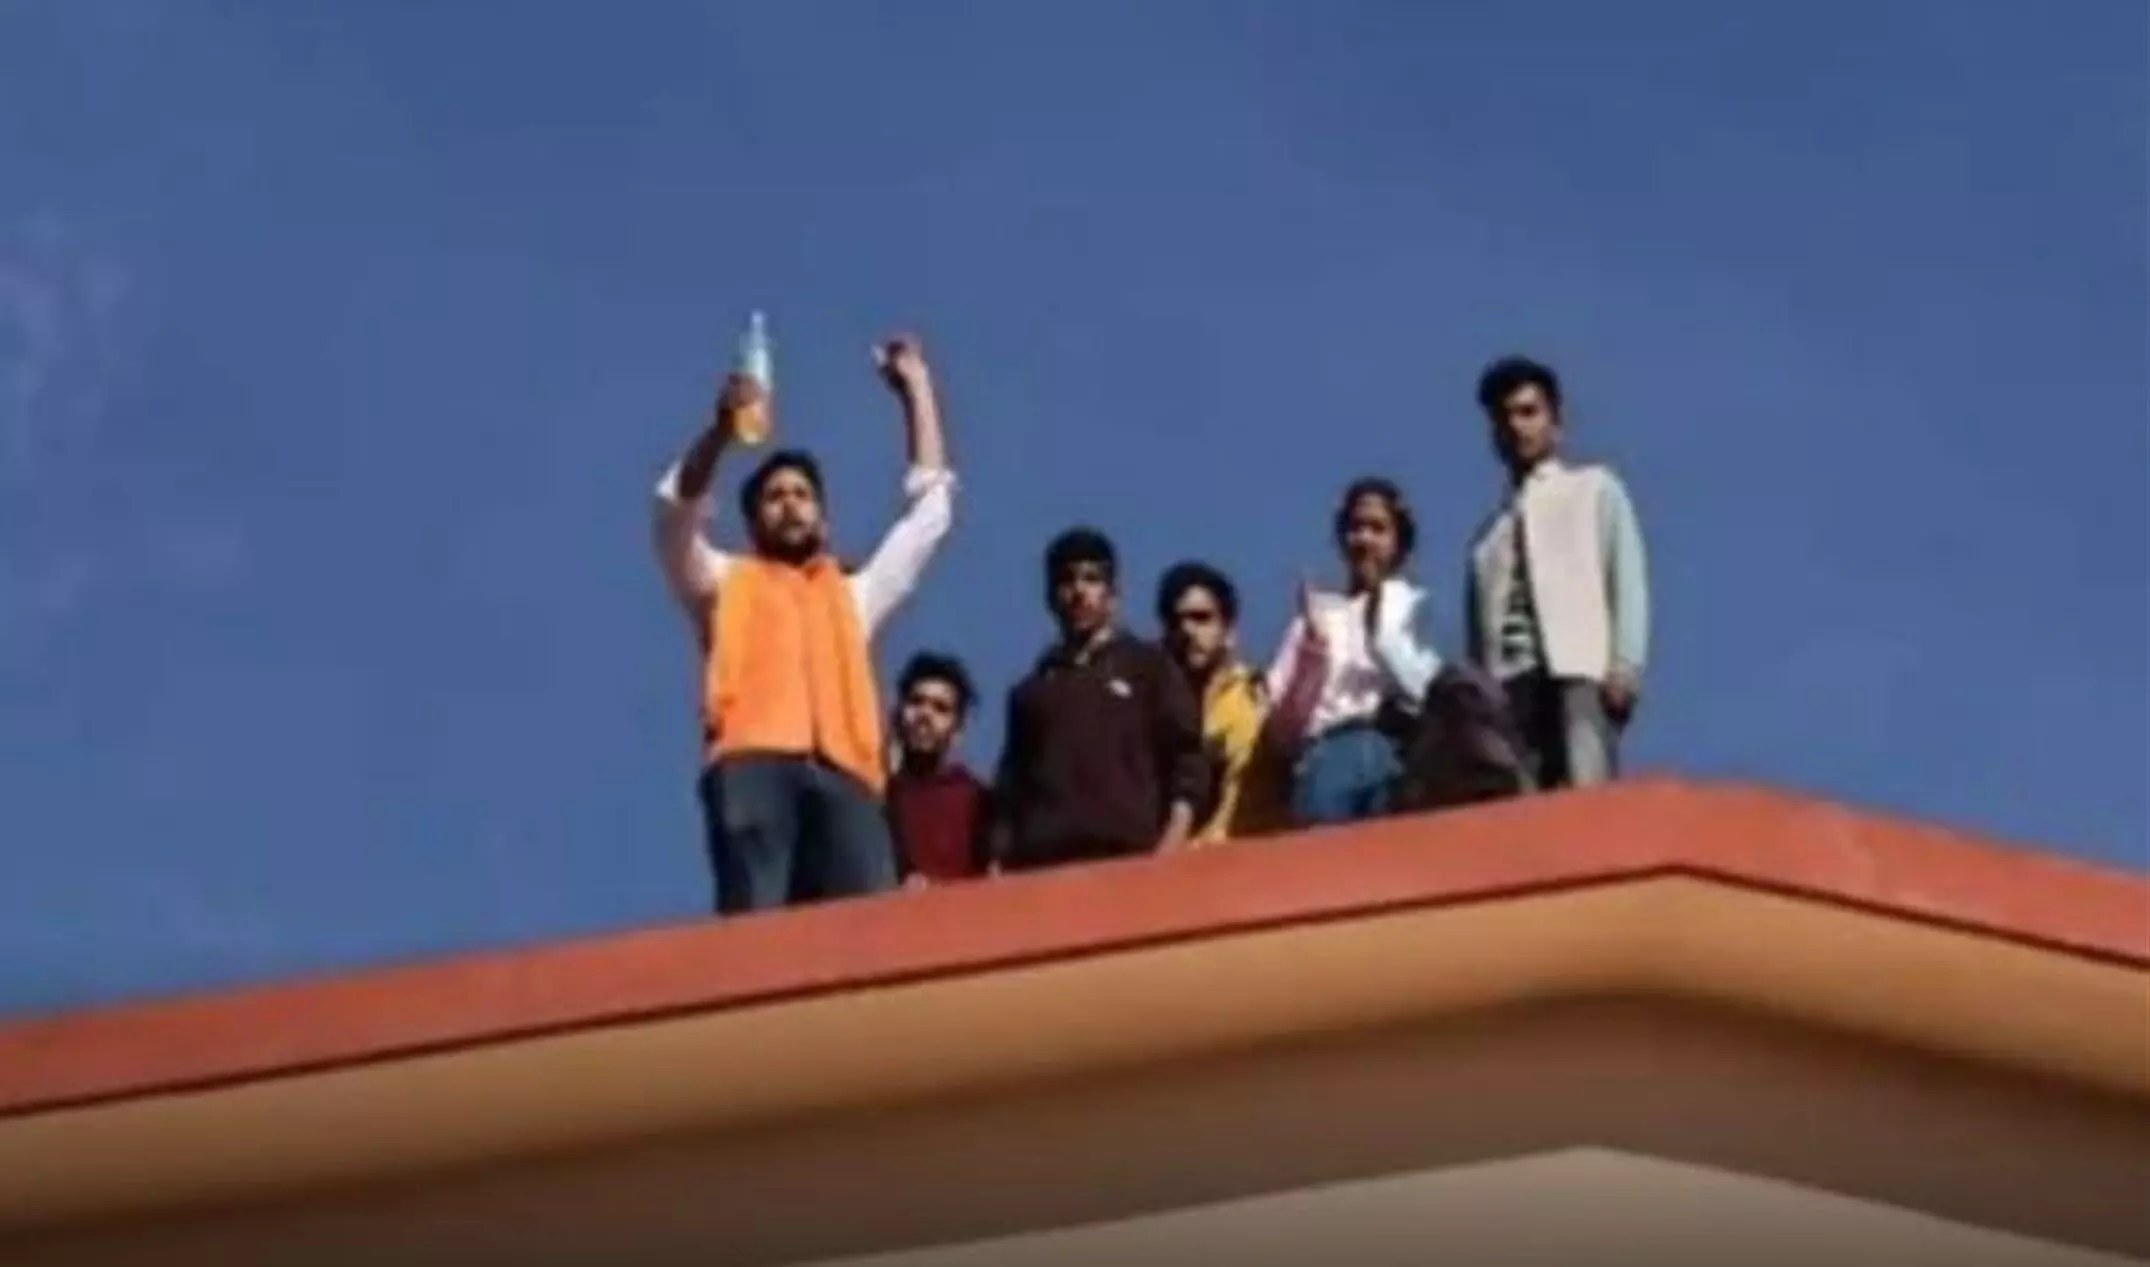 Dehradun News : अब टिहरी में पेट्रोल लेकर कॉलेज की छत पर चढ़े छात्र, छात्र संघ चुनाव की है मांग, एक सप्ताह में मांग पूरी होने के आश्वासन पर माने छात्र